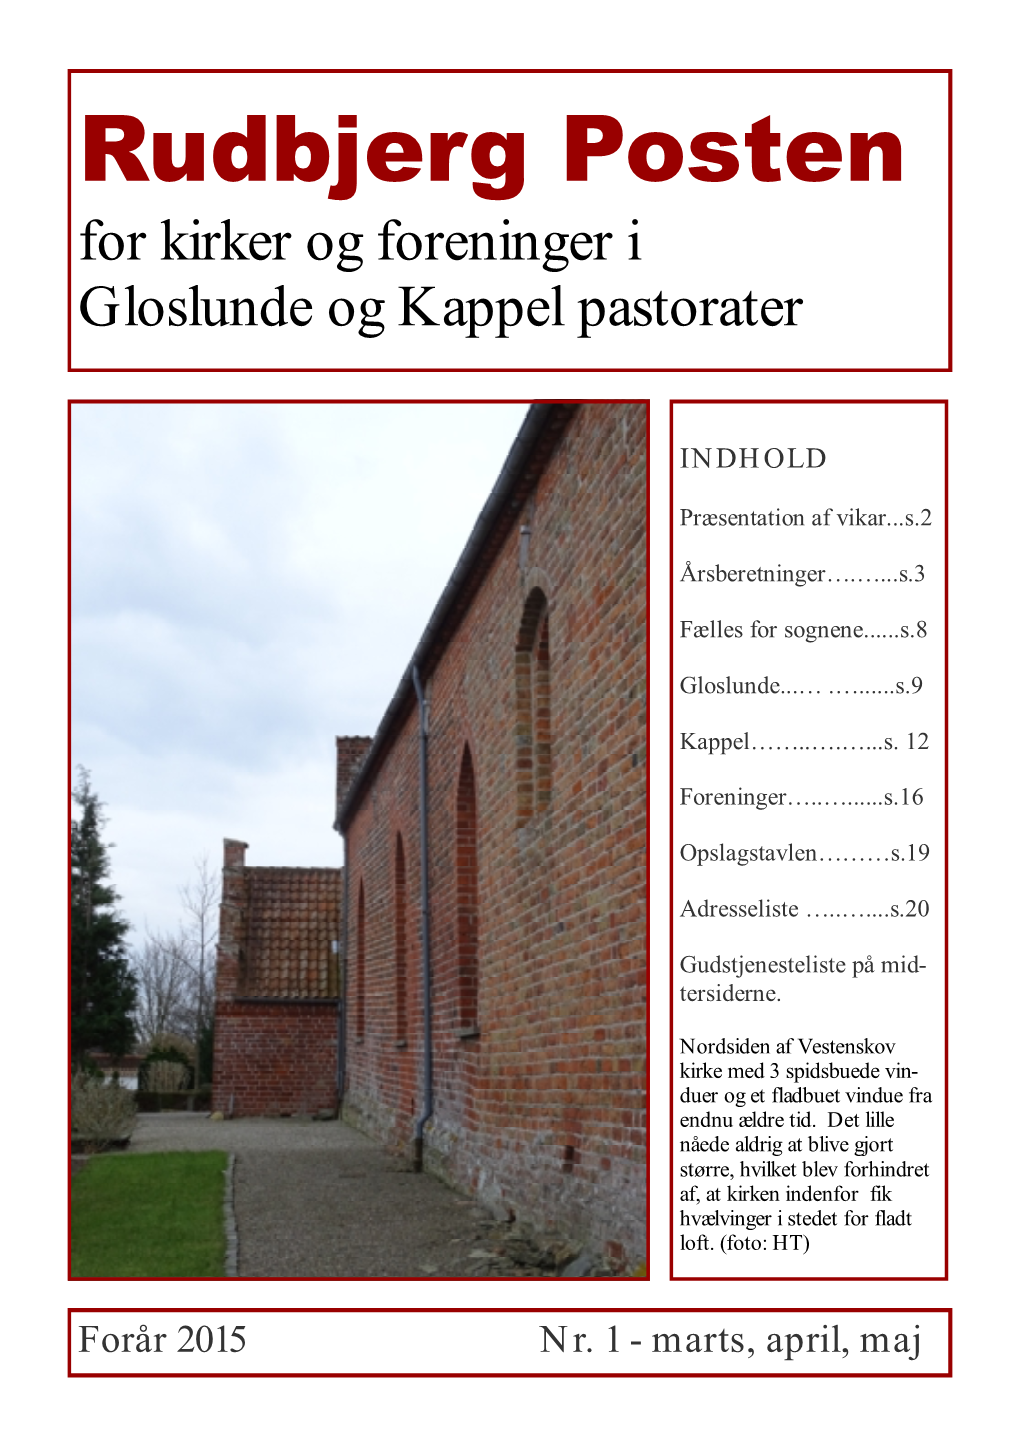 Rudbjerg Posten for Kirker Og Foreninger I Gloslunde Og Kappel Pastorater